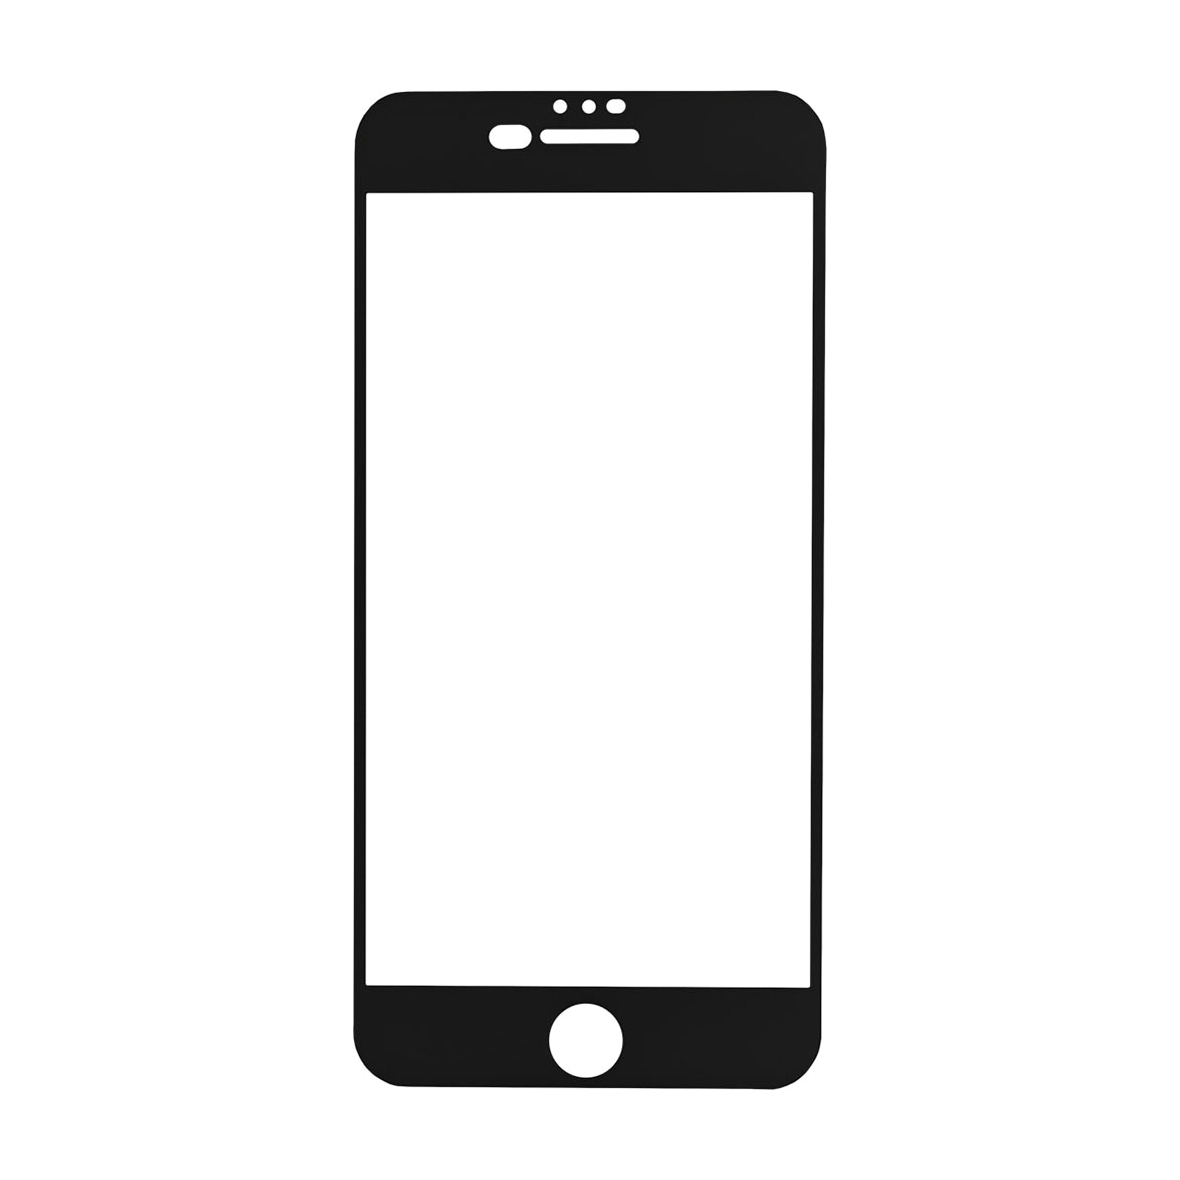 Защитное стекло Red Line Corning Full Screen для iPhone 6 Plus/7 Plus/8 Plus, черное, цвет черный iPhone 6 Plus, iPhone 7 Plus, iPhone 8 Plus - фото 1